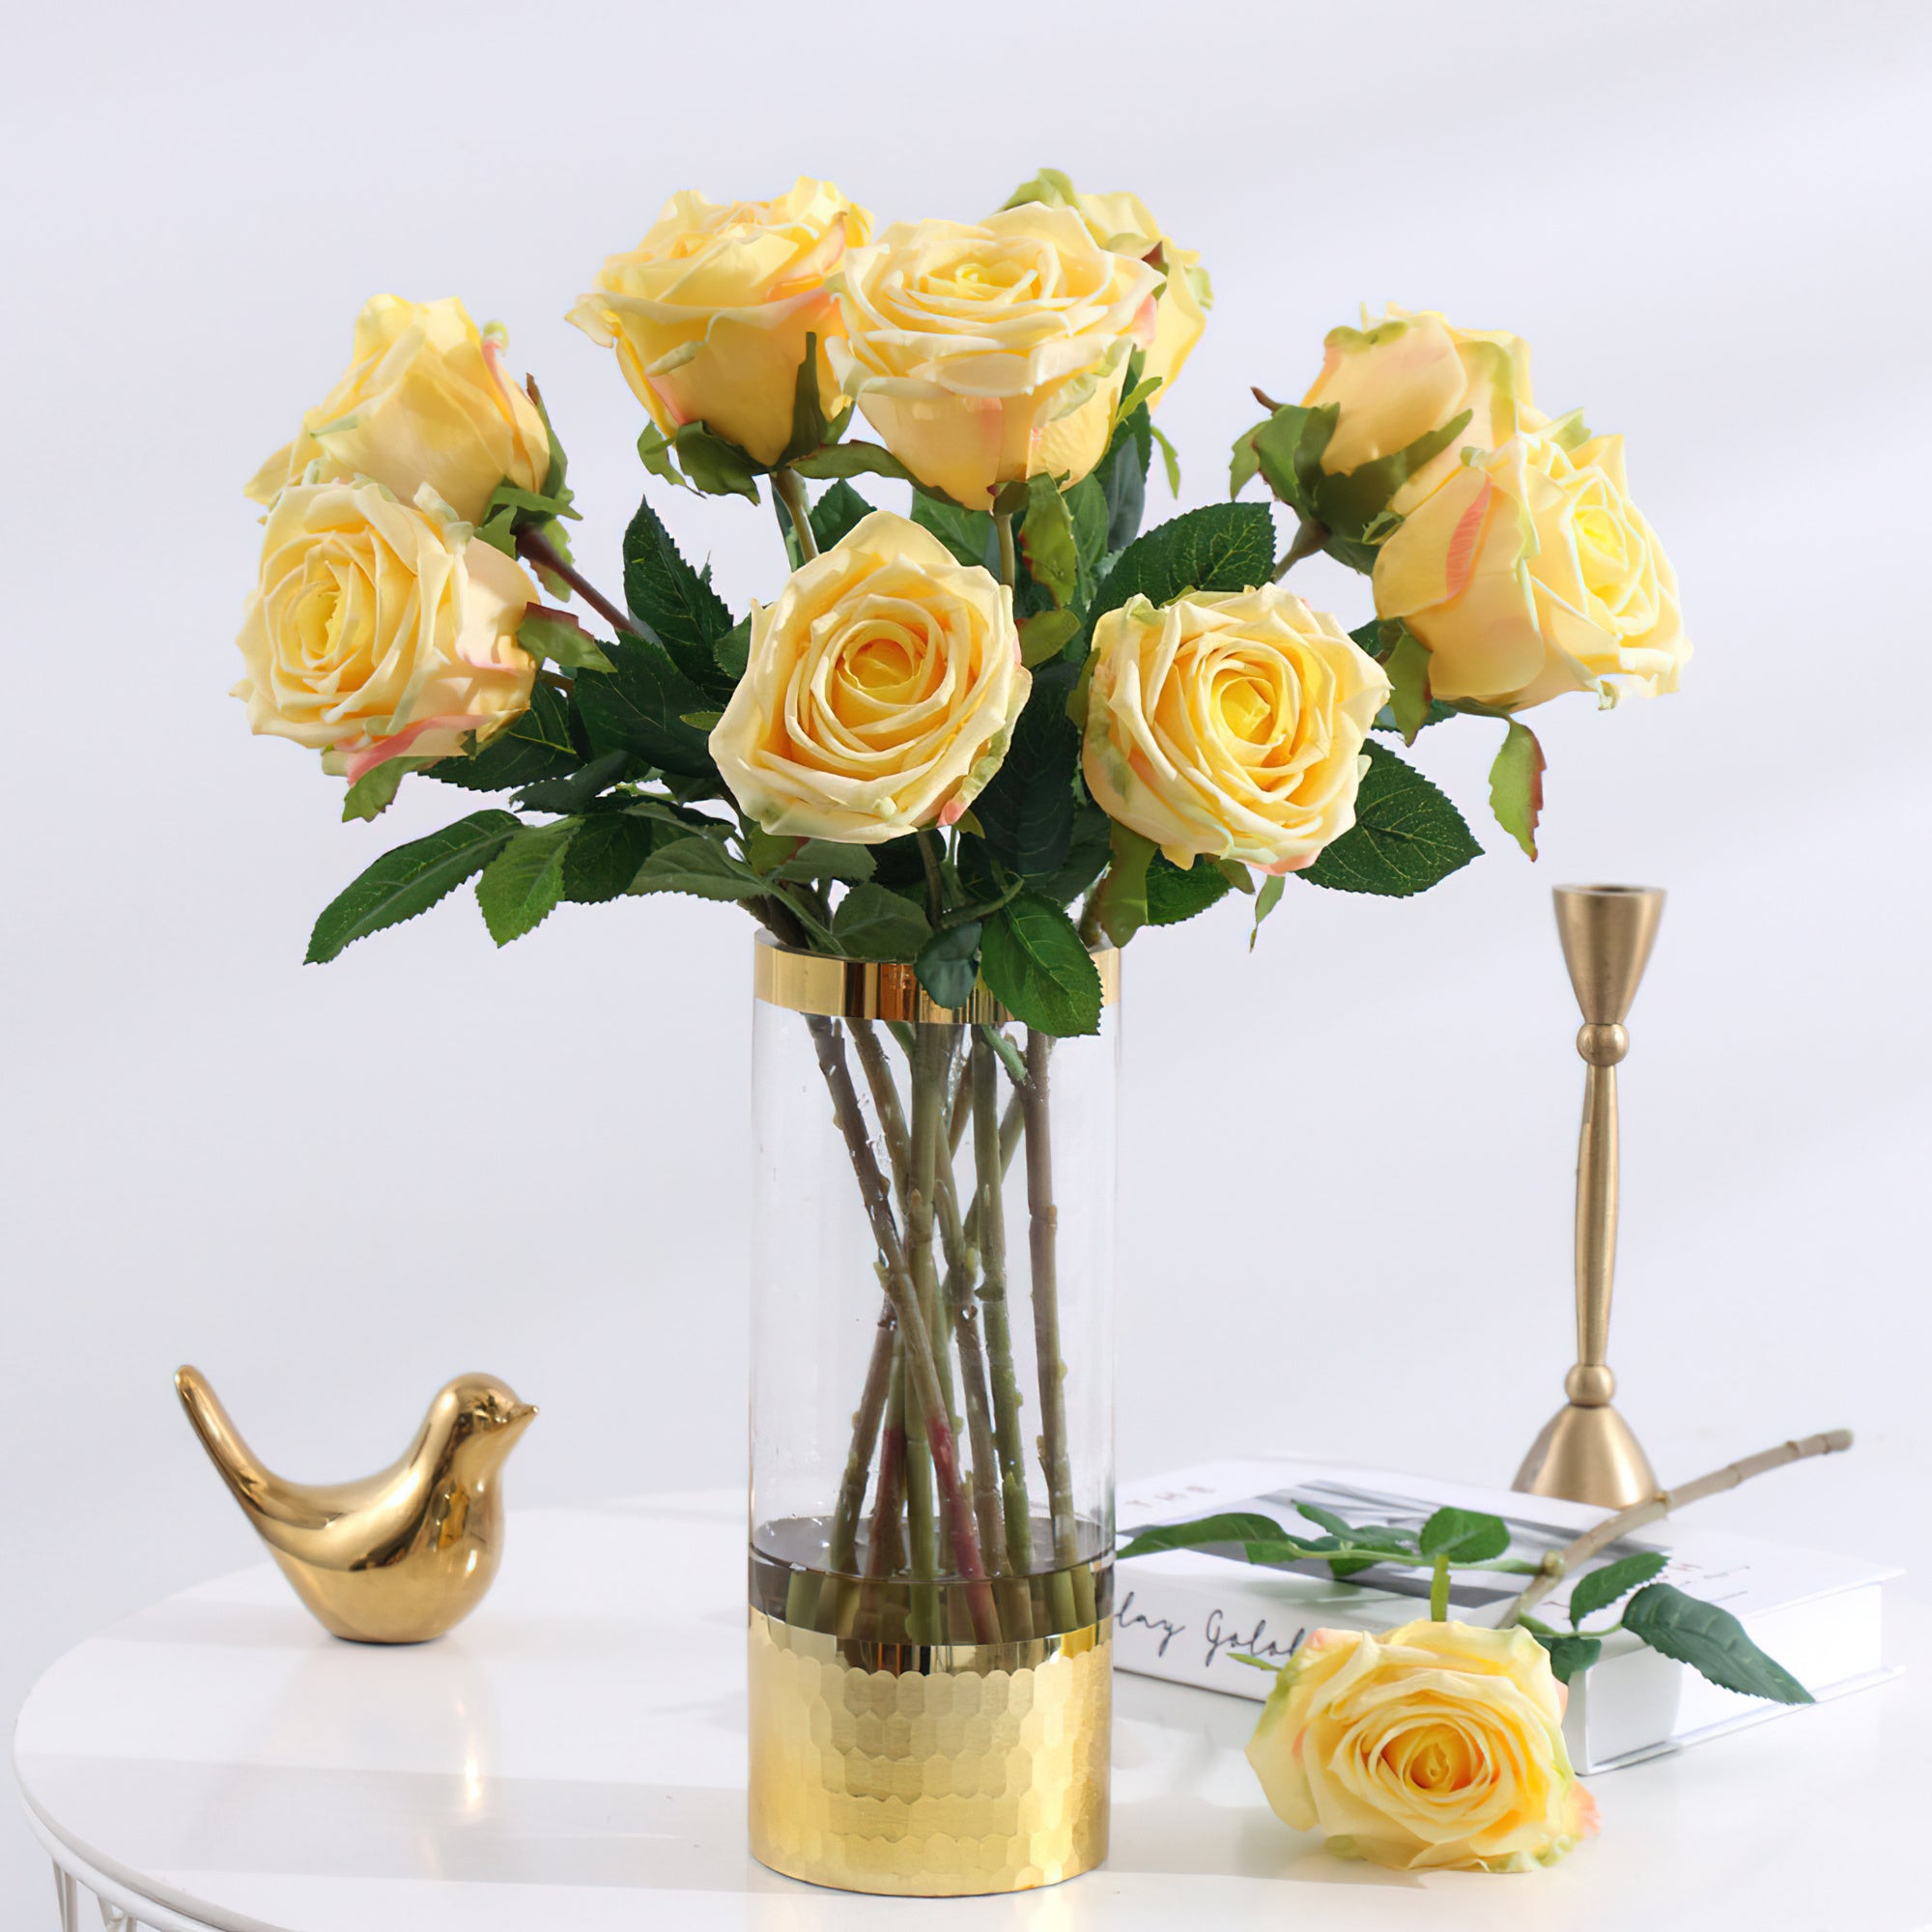 Faux bouquet de roses de style européen – Roses artificielles de qualité supérieure au toucher riche en humidité pour la décoration de la maison, du salon et de la salle à manger – Embellissements de mariage élégants et accessoires de luxe